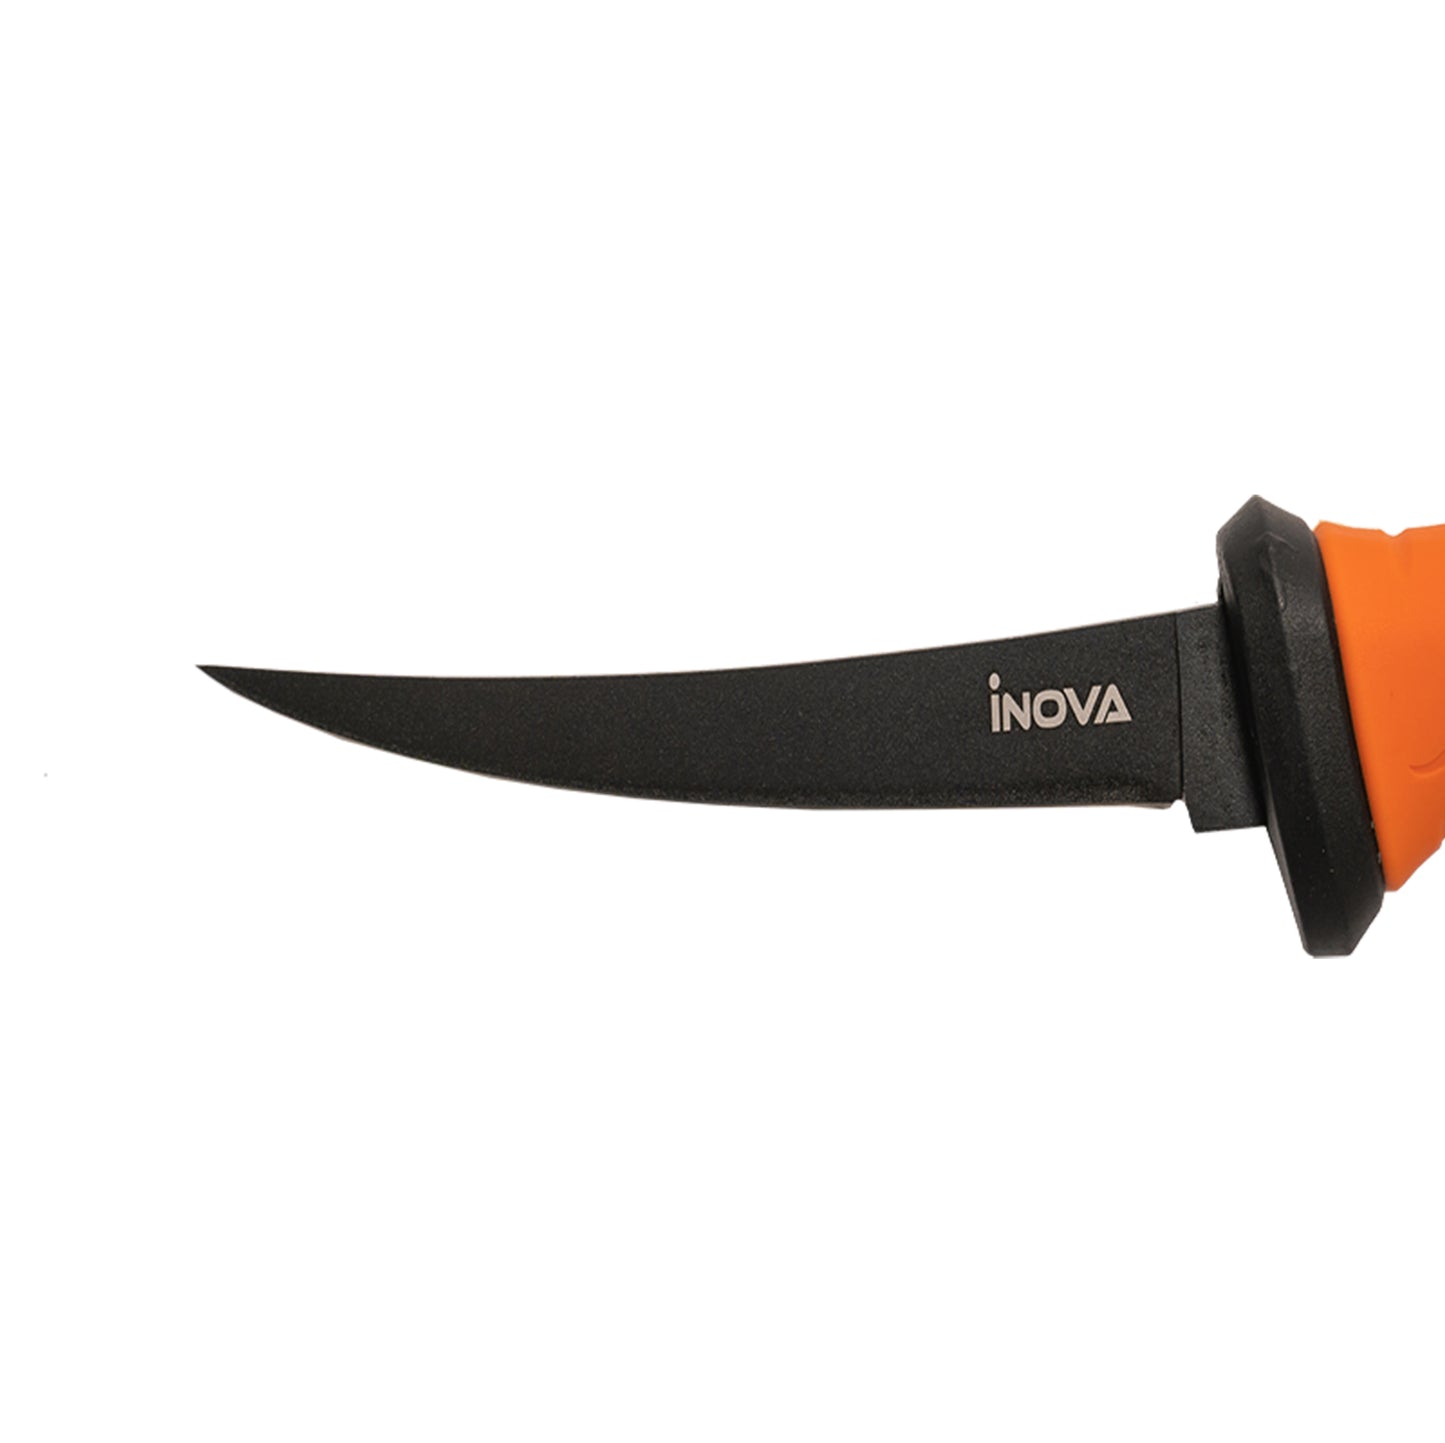 Inova Bait Fillet Knife Blade